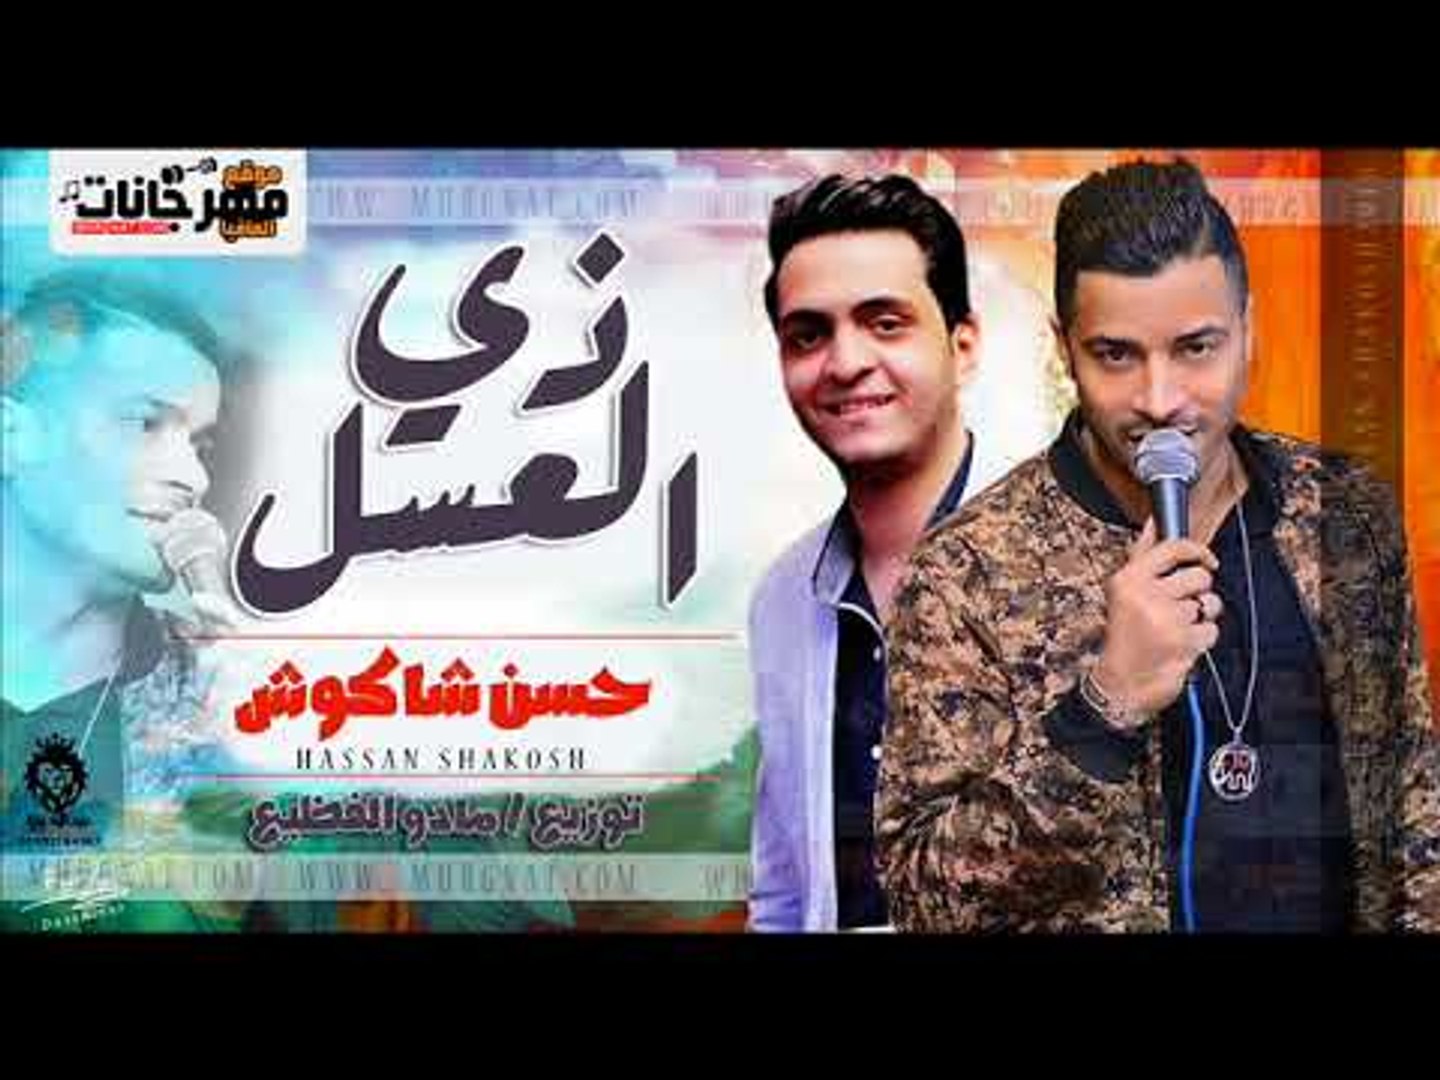 حسن شاكوش 2018 اغنية زى العسل - حسن شاكوش | توزيع مادو الفظيع Zay El Assel  SHakoSH - فيديو Dailymotion